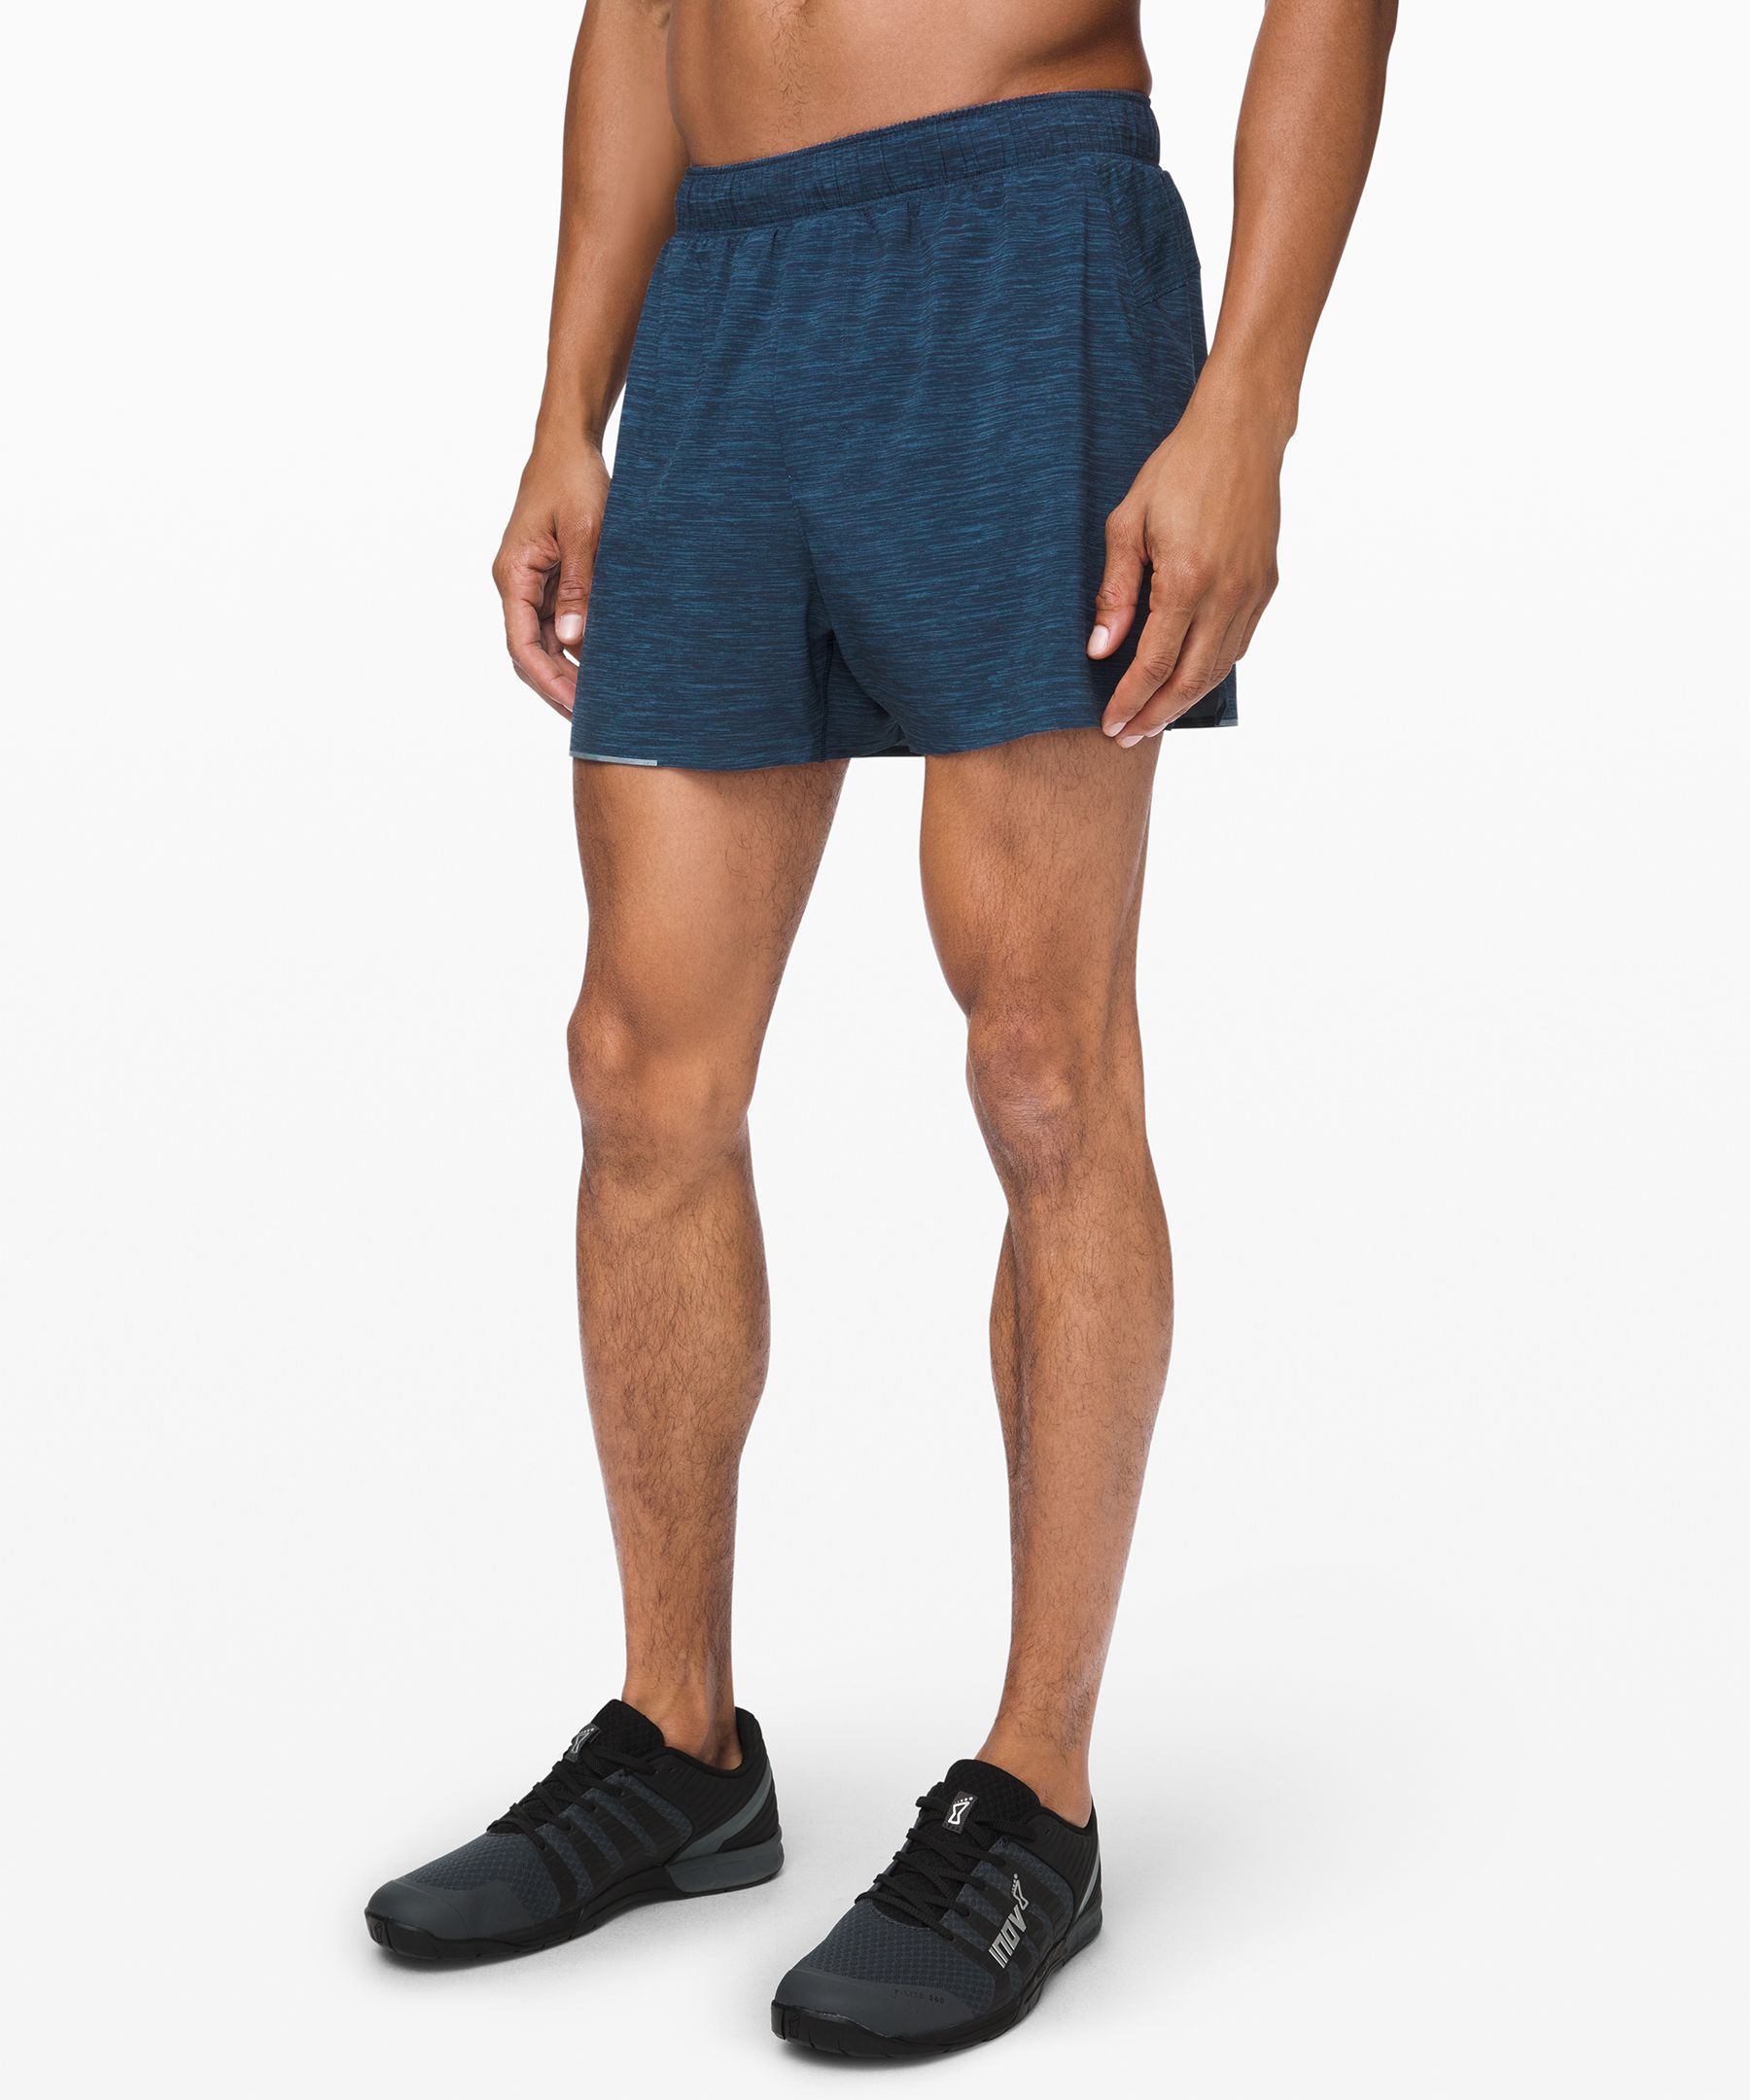 lululemon athletica shorts